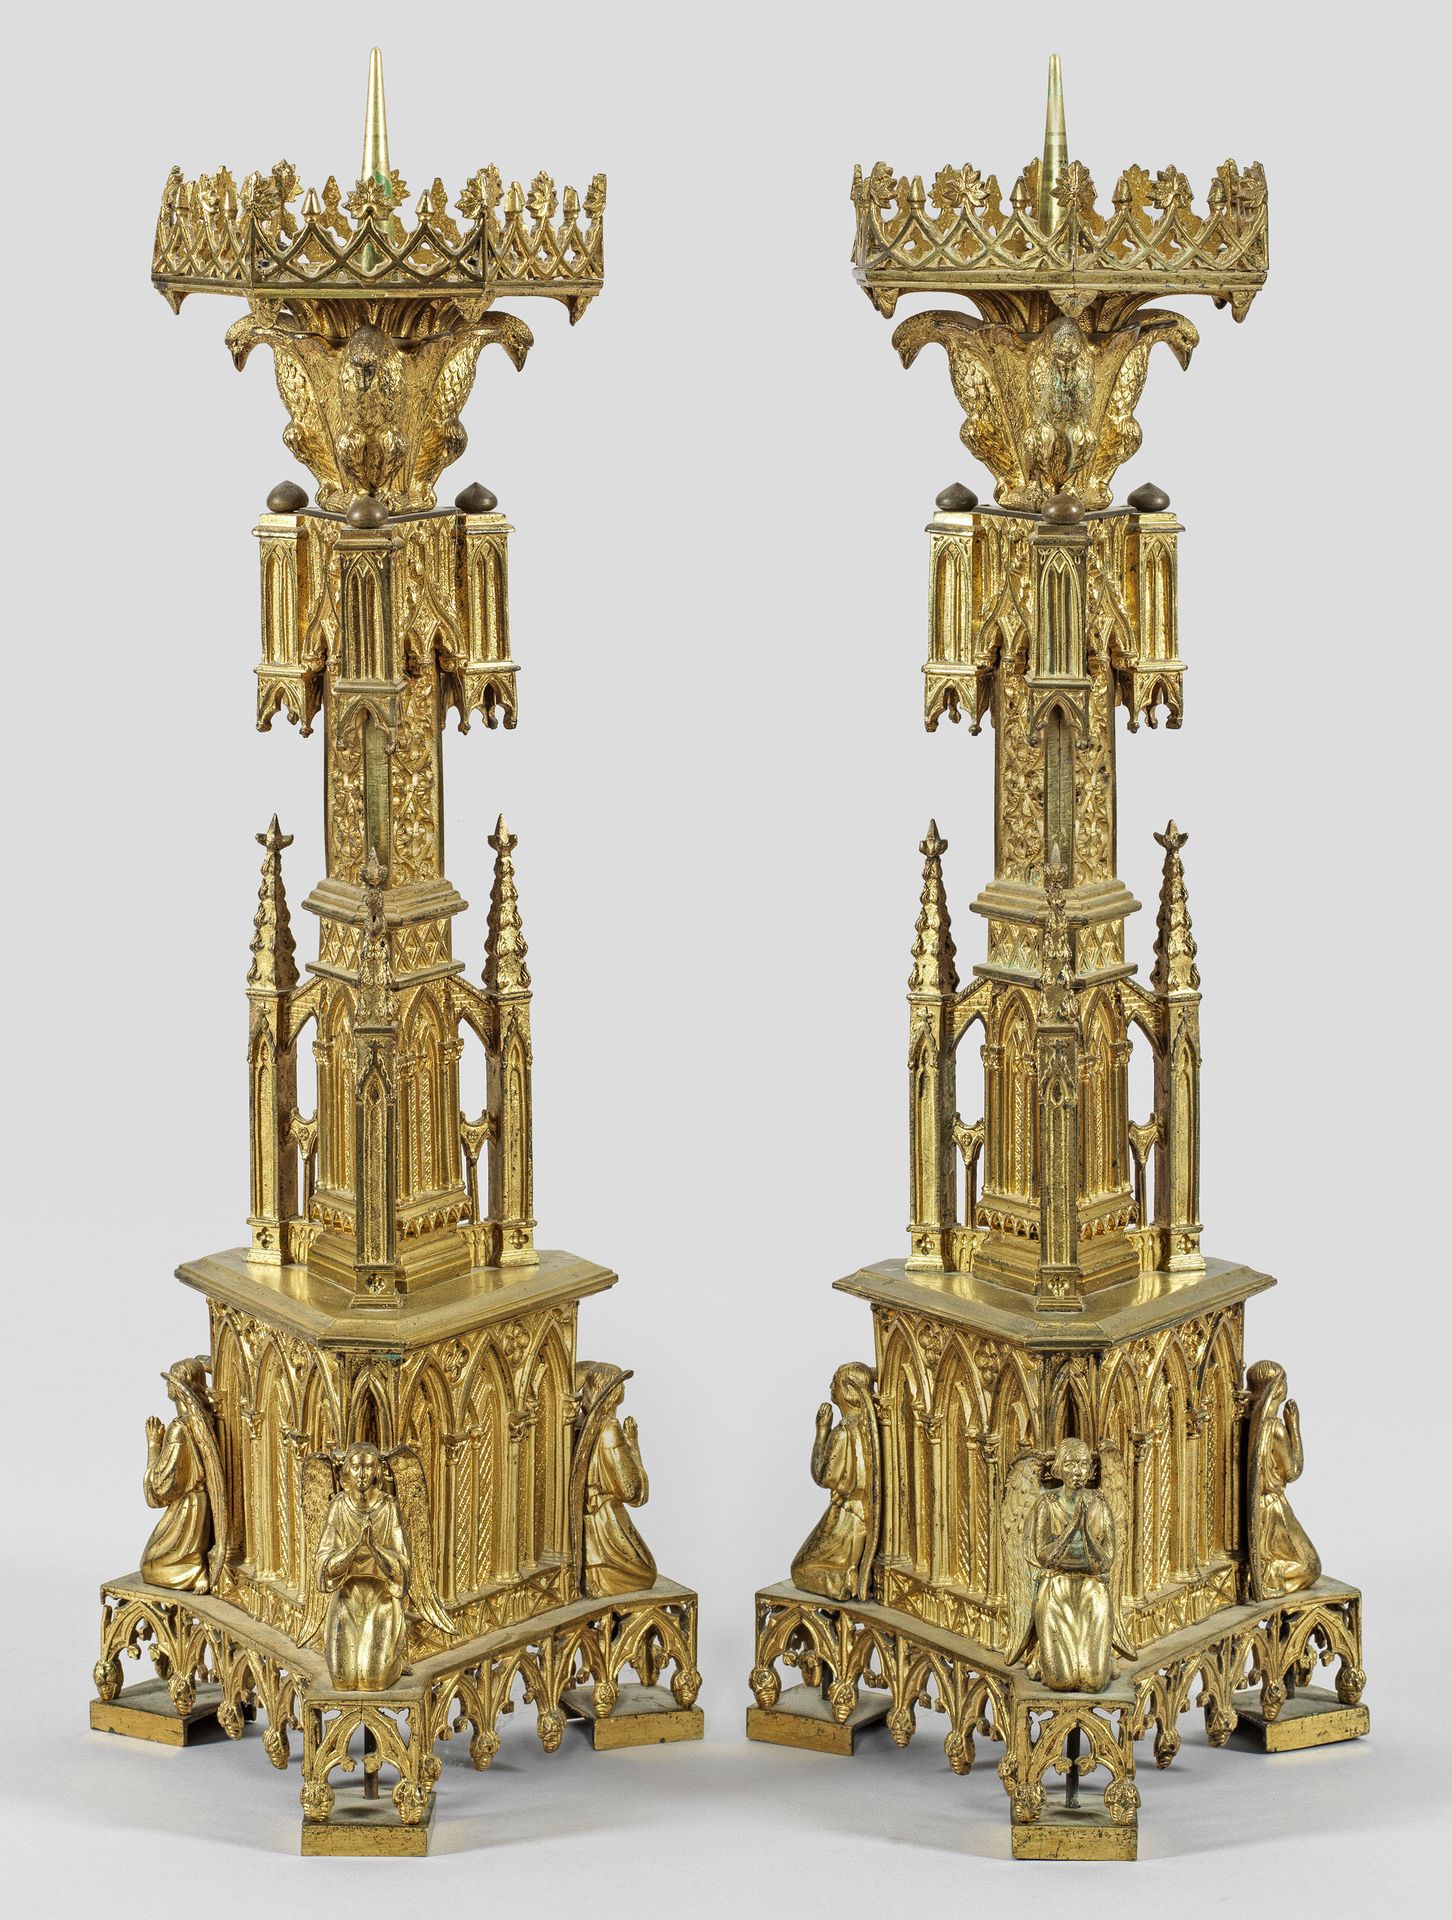 Null 一对大型新哥特式祭坛烛台，单灯；黄铜，镀金。阶梯式上升的烛身采用了大教堂的建筑元素，如尖拱和桁架，两侧是雕刻精美的天使形象和尖塔。檐碗由上方的鹰支撑，&hellip;